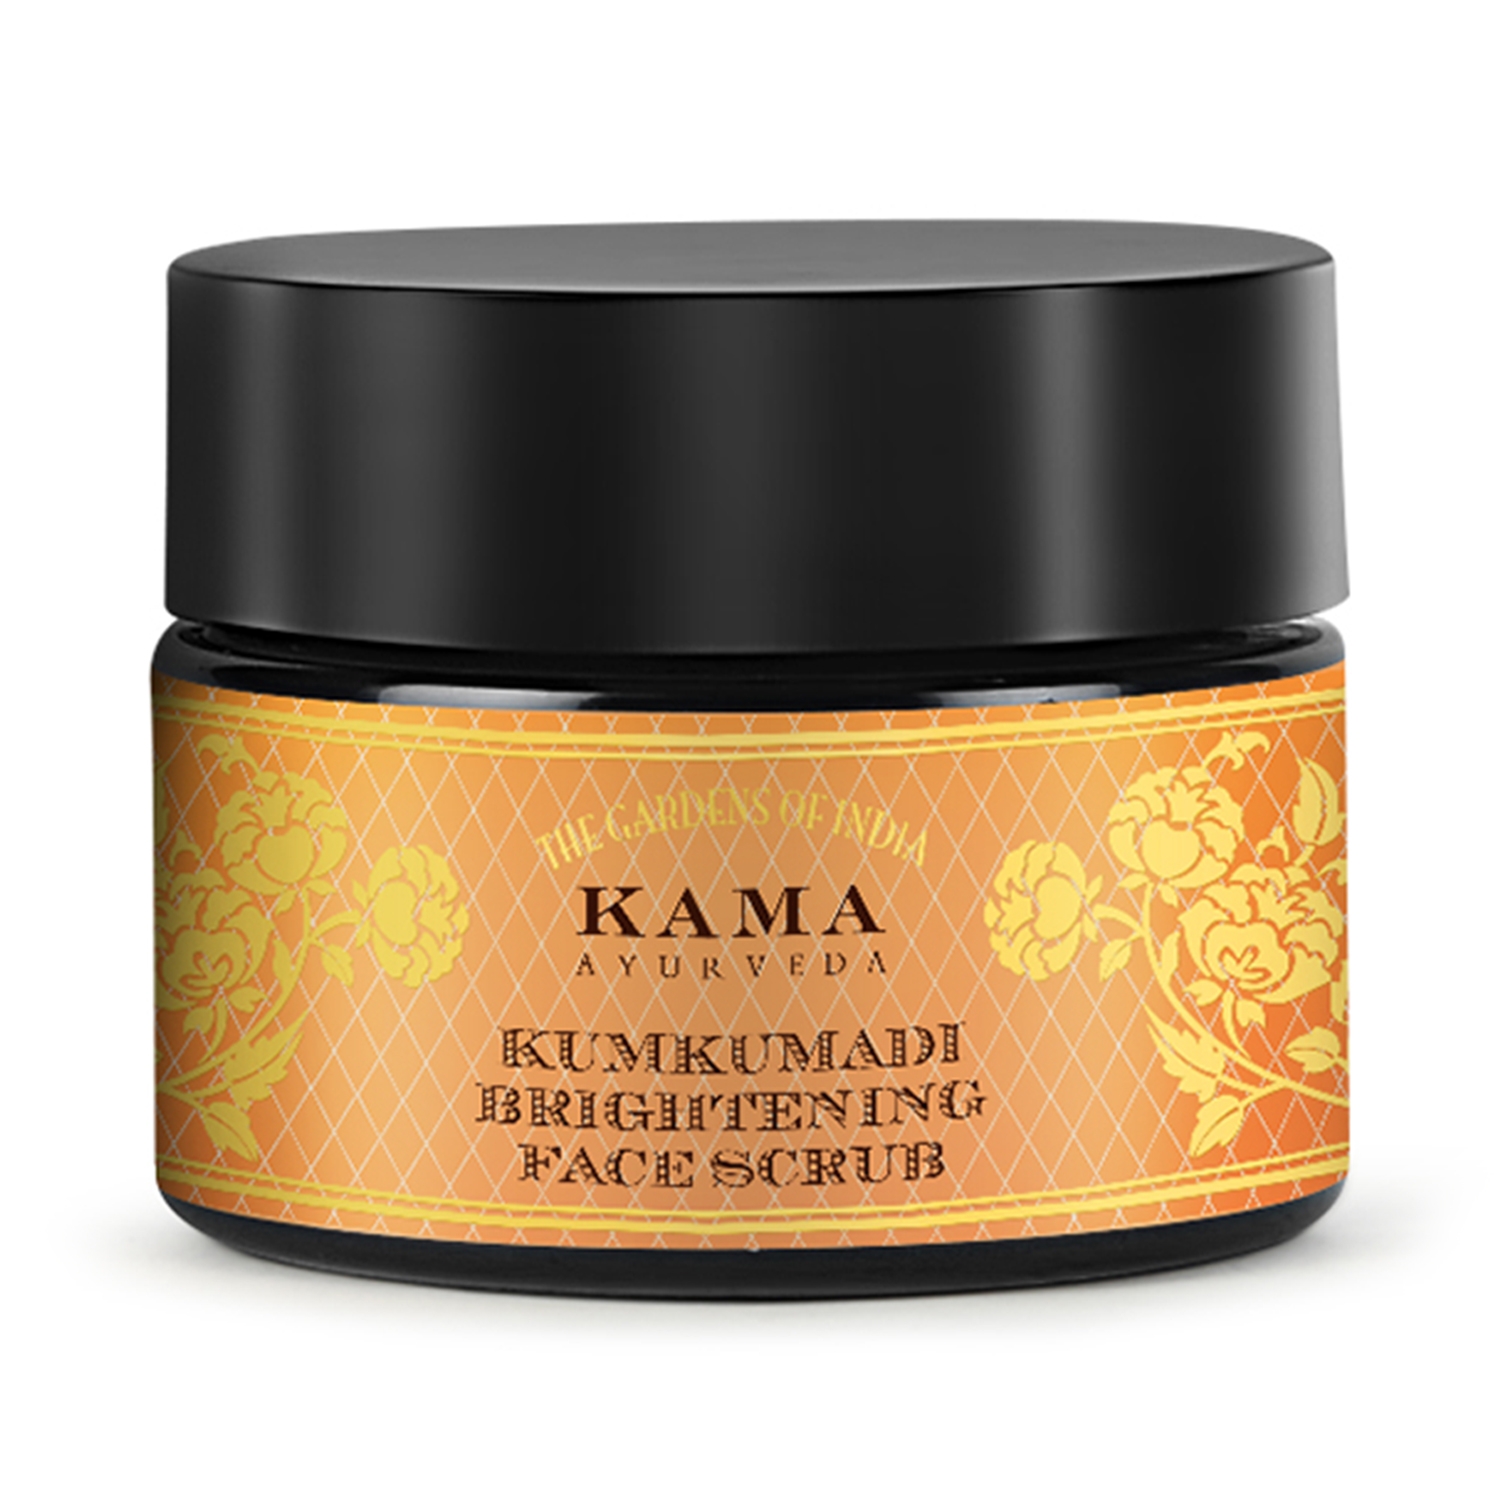 Kama Ayurveda | Kama Ayurveda Kumkumadi Brightening Face Scrub (25g)